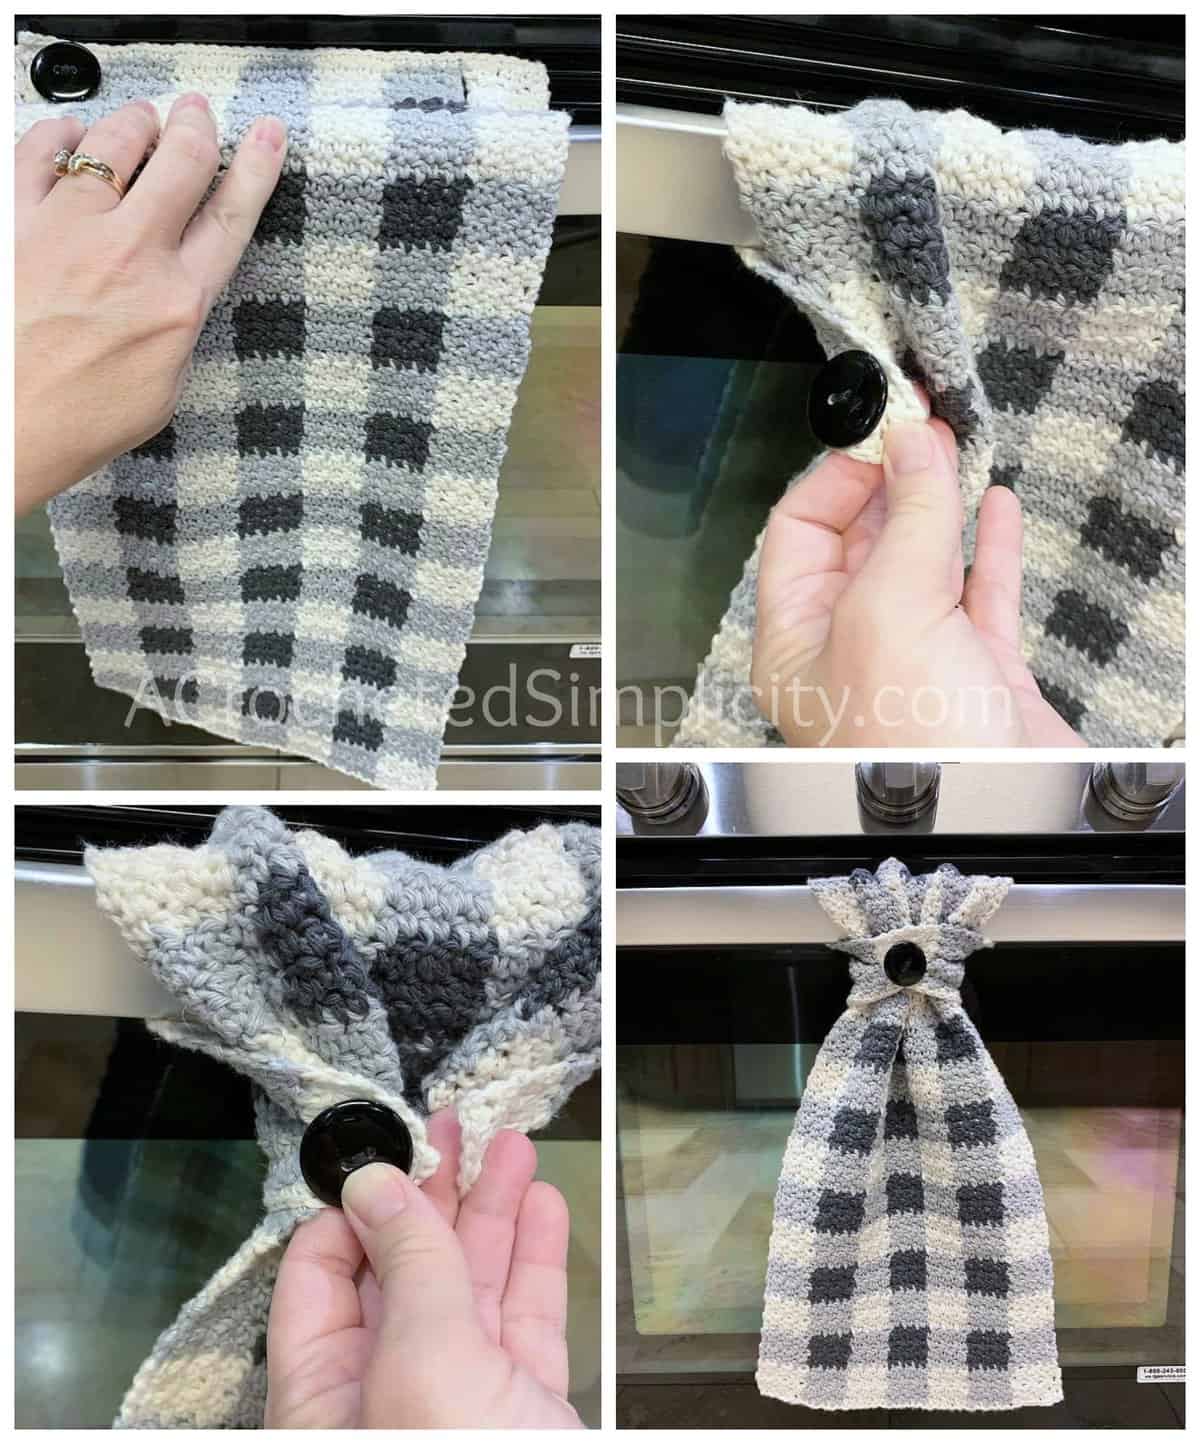 Free Crochet Pattern - Buffalo Plaid Dish Towel by A Crocheted Simplicity #buffaloplaidtowel #buffaloplaidcrochet #freecrochetpattern #crochetdishtowel #crochetteatowel #farmhousechecktowel #crochetkitchentowel